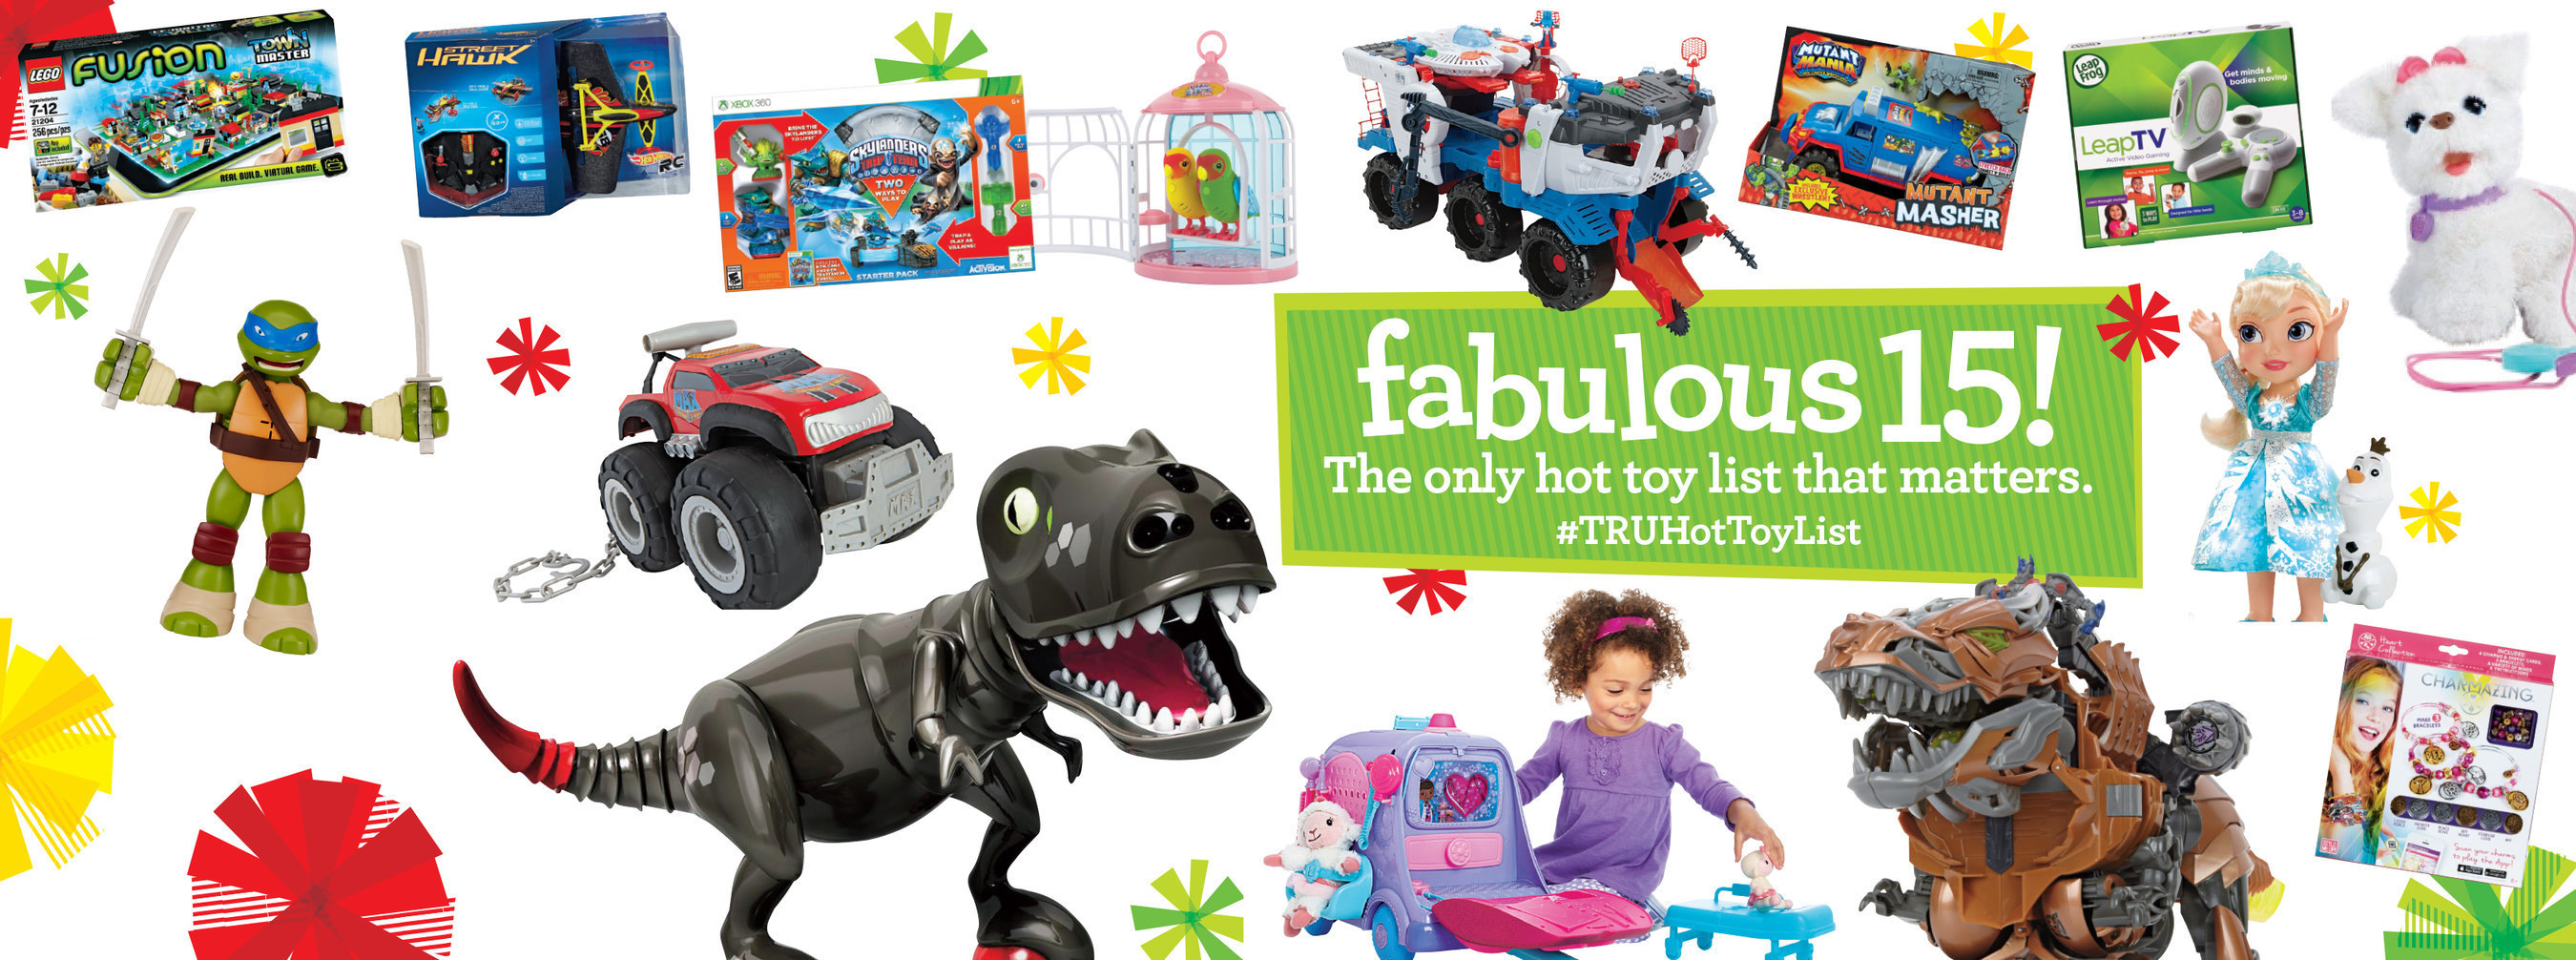 Toys"R"Us(R) Unveils The 2014 #TRUHotToyList (PRNewsFoto/Toys"R"Us, Inc.)